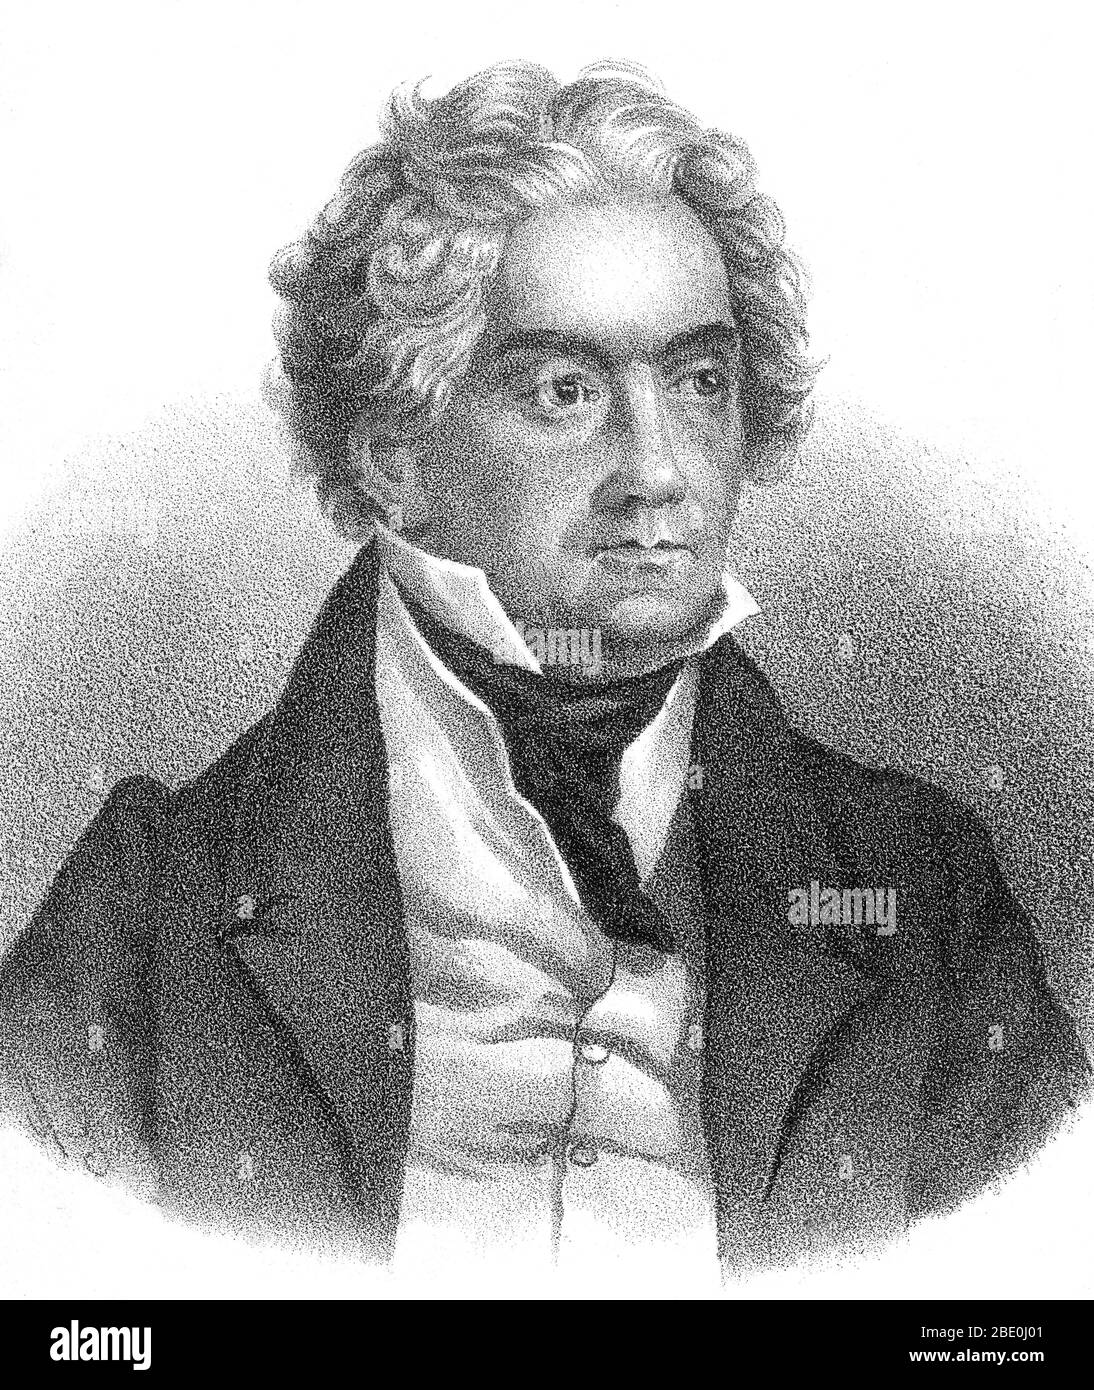 Ludwig van Beethoven (baptisé le 17 décembre 1770 au 26 mars 1827) fut compositeur et pianiste allemand. Figure cruciale dans la transition entre les époques classique et romantique de la musique d'art occidentale, il reste l'un des compositeurs les plus célèbres et les plus influents. Beethoven est né à Bonn, mais a déménagé à Vienne au début des années 20, étudiant avec Joseph Haydn et gagnant rapidement une réputation de pianiste virtuose. Son audition a commencé à se détériorer à la fin de ses années vingt, mais il a continué à composer, à conduire et à exécuter, même après être complètement sourd. En 1800 environ, son audition a commencé à dissuader Banque D'Images